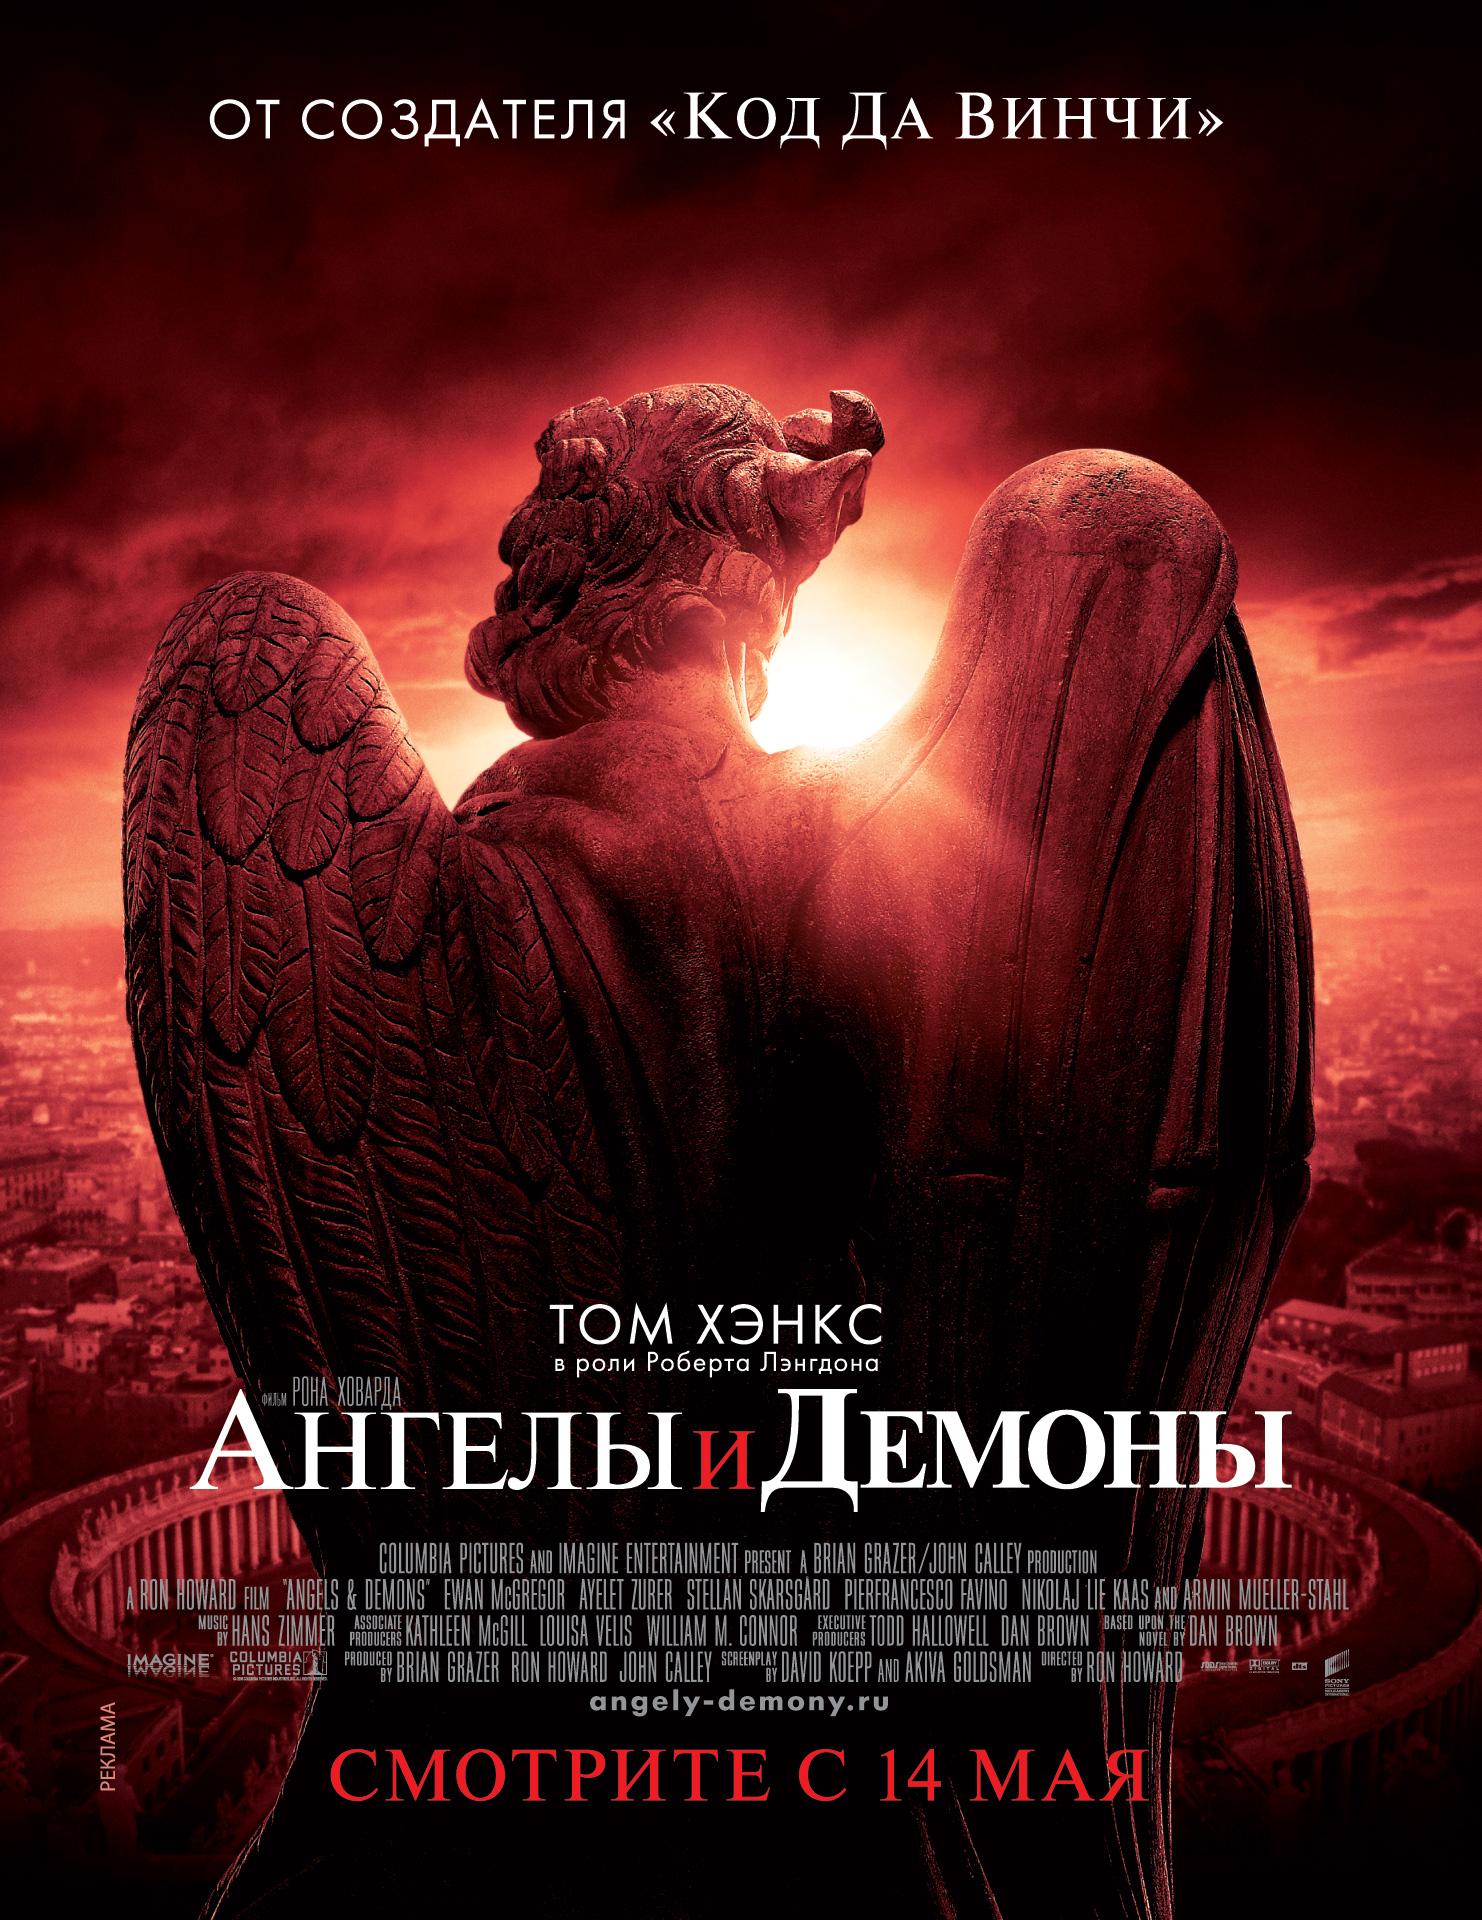 Постер фильма Ангелы и Демоны | Angels & Demons